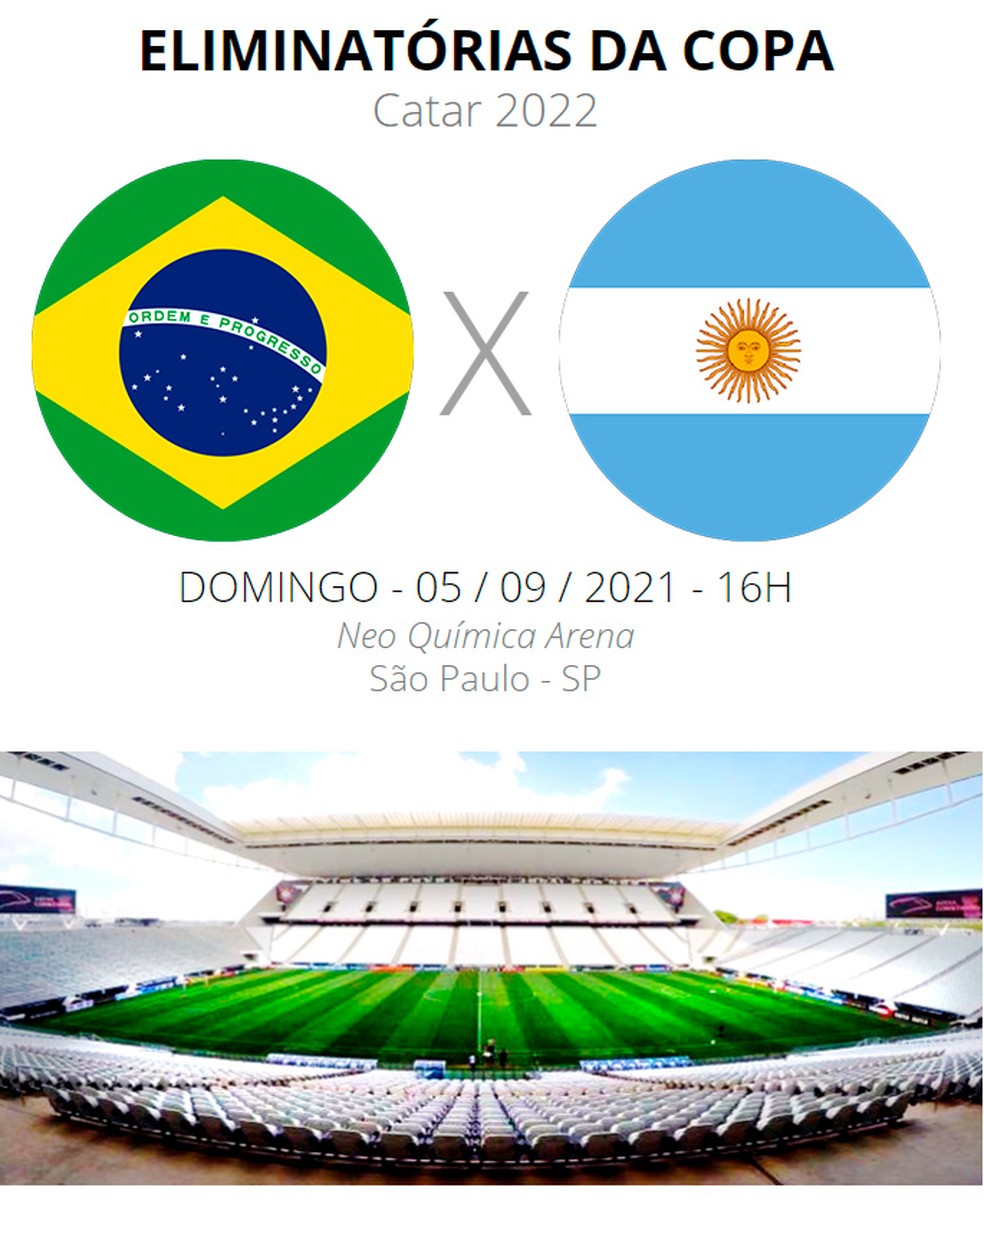 Brasil x Argentina ao vivo: como assistir online e transmissão na TV do jogo  das Eliminatórias da Copa do Mundo - Portal da Torcida